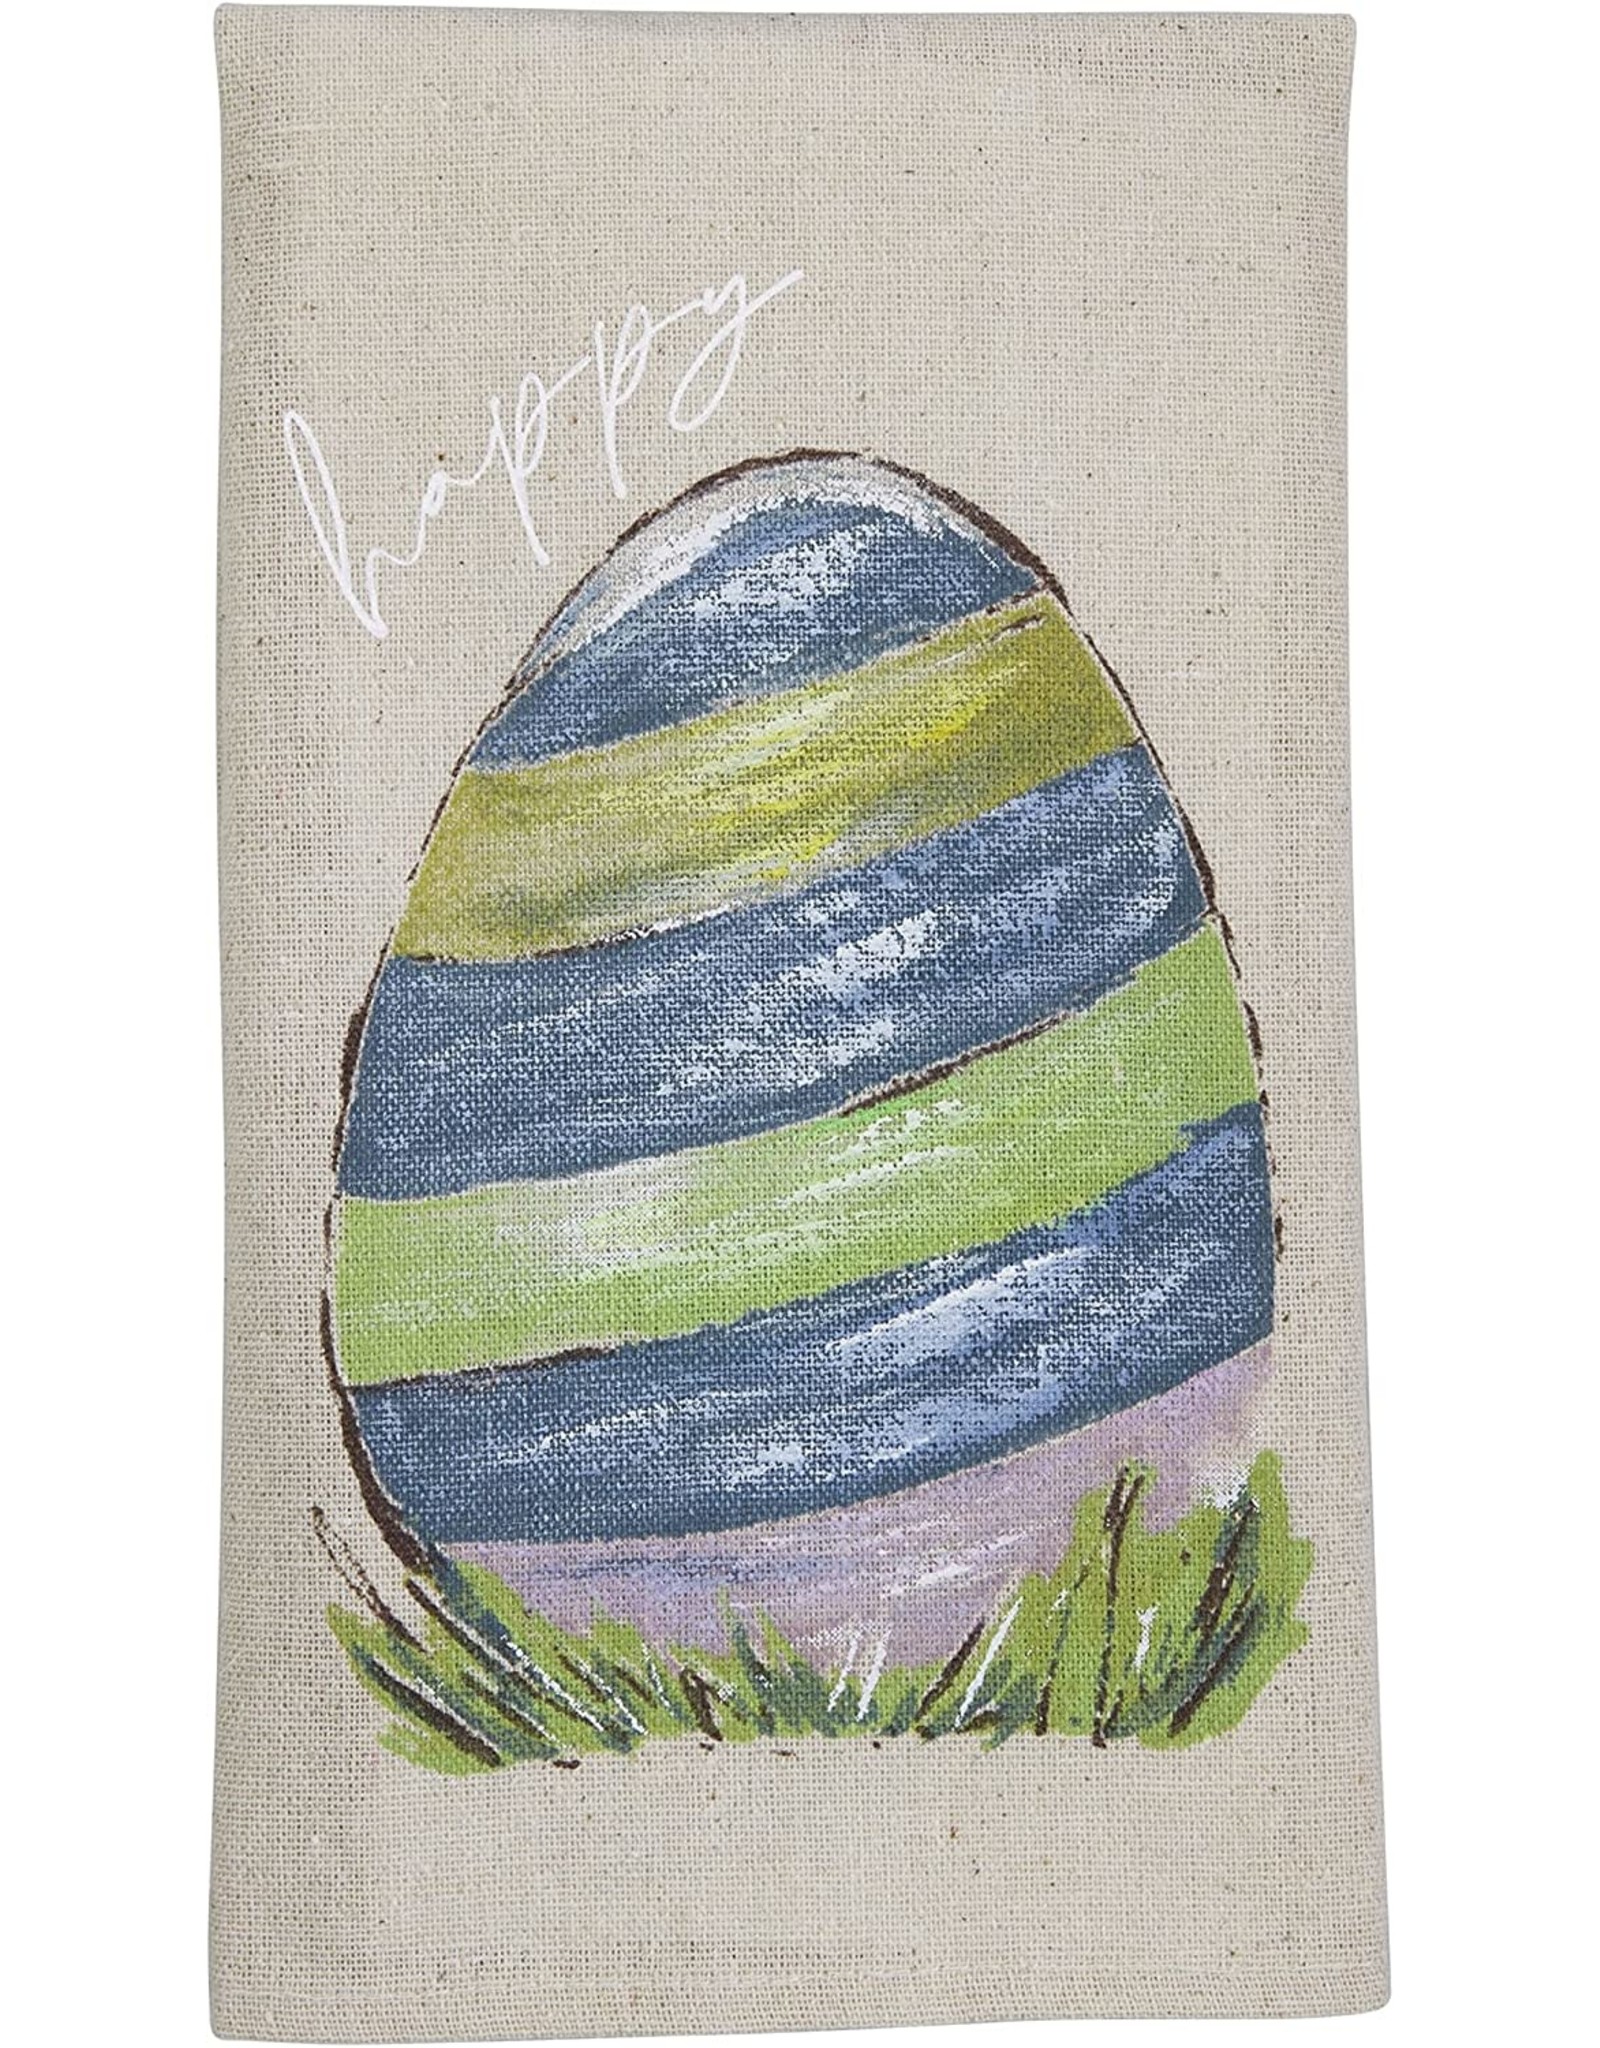 Mud Pie Painted Easter Towel - Happy Easter Egg